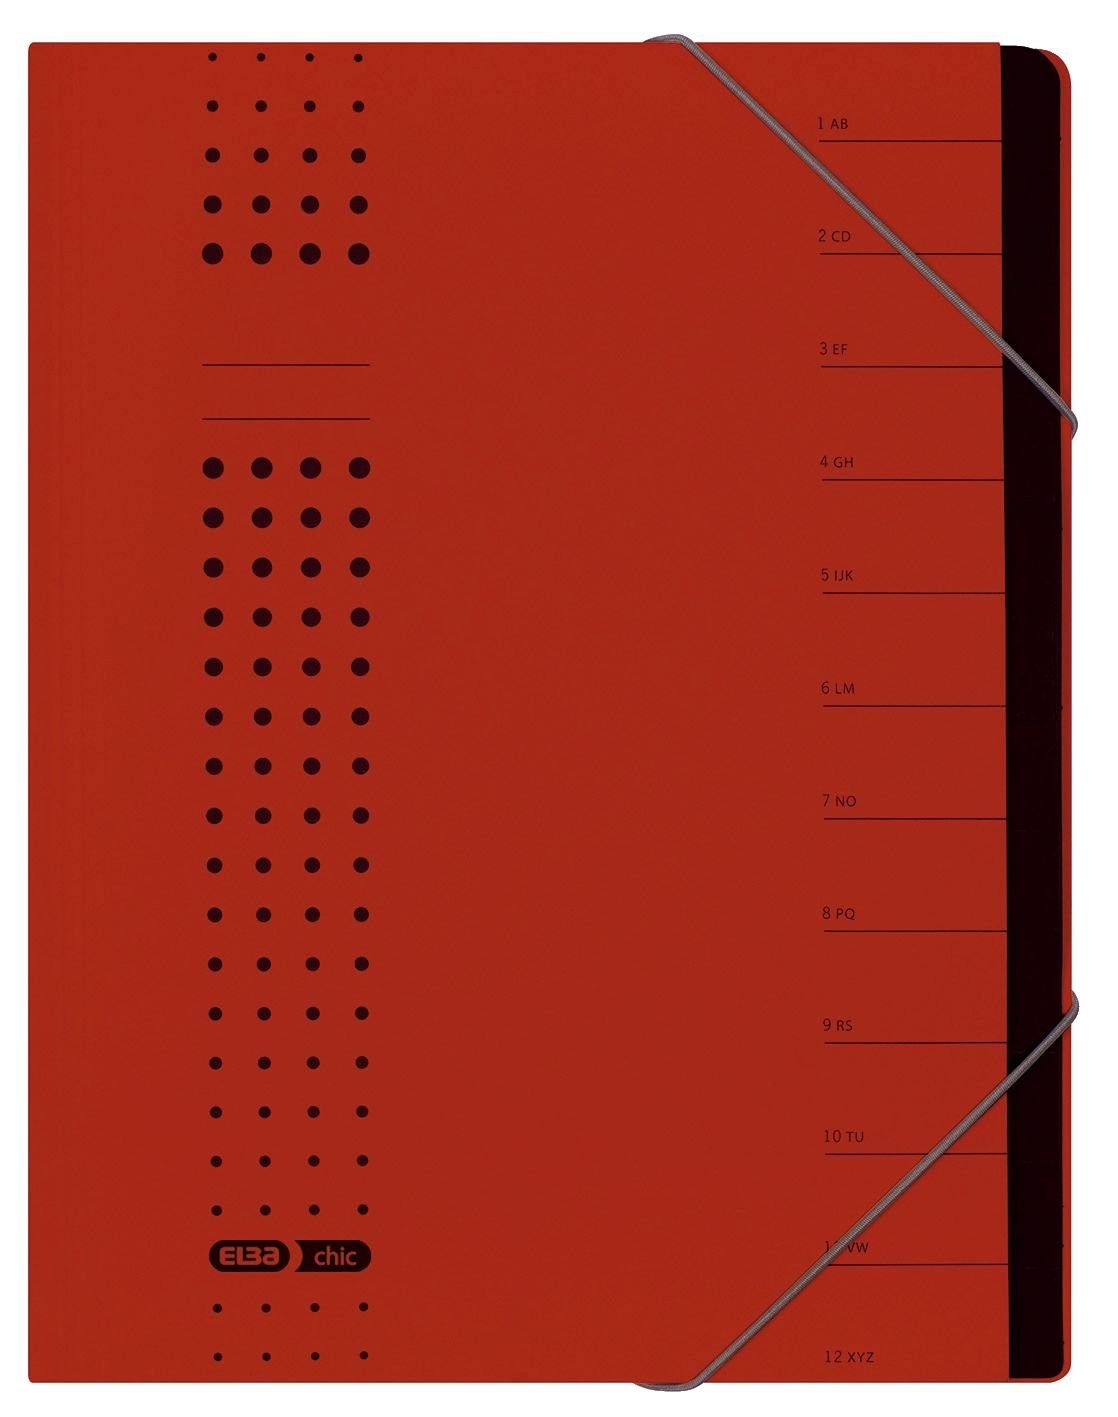 ELBA Schreibmappe ELBA chic-Ordnungsmappe, A4 rot, Fächer 1-12, Karton